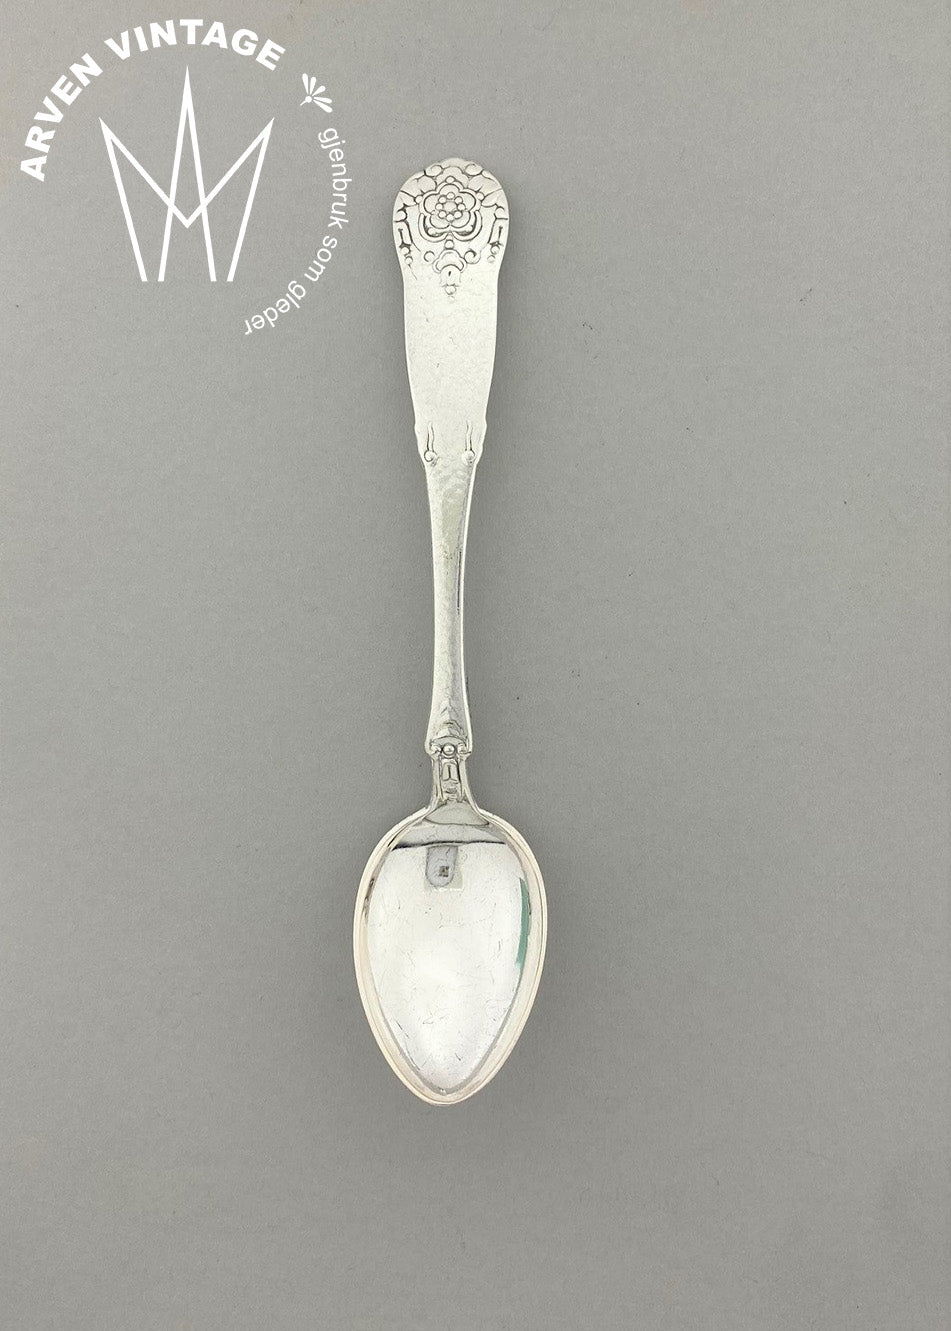 Vintage Hardanger large teaspoon